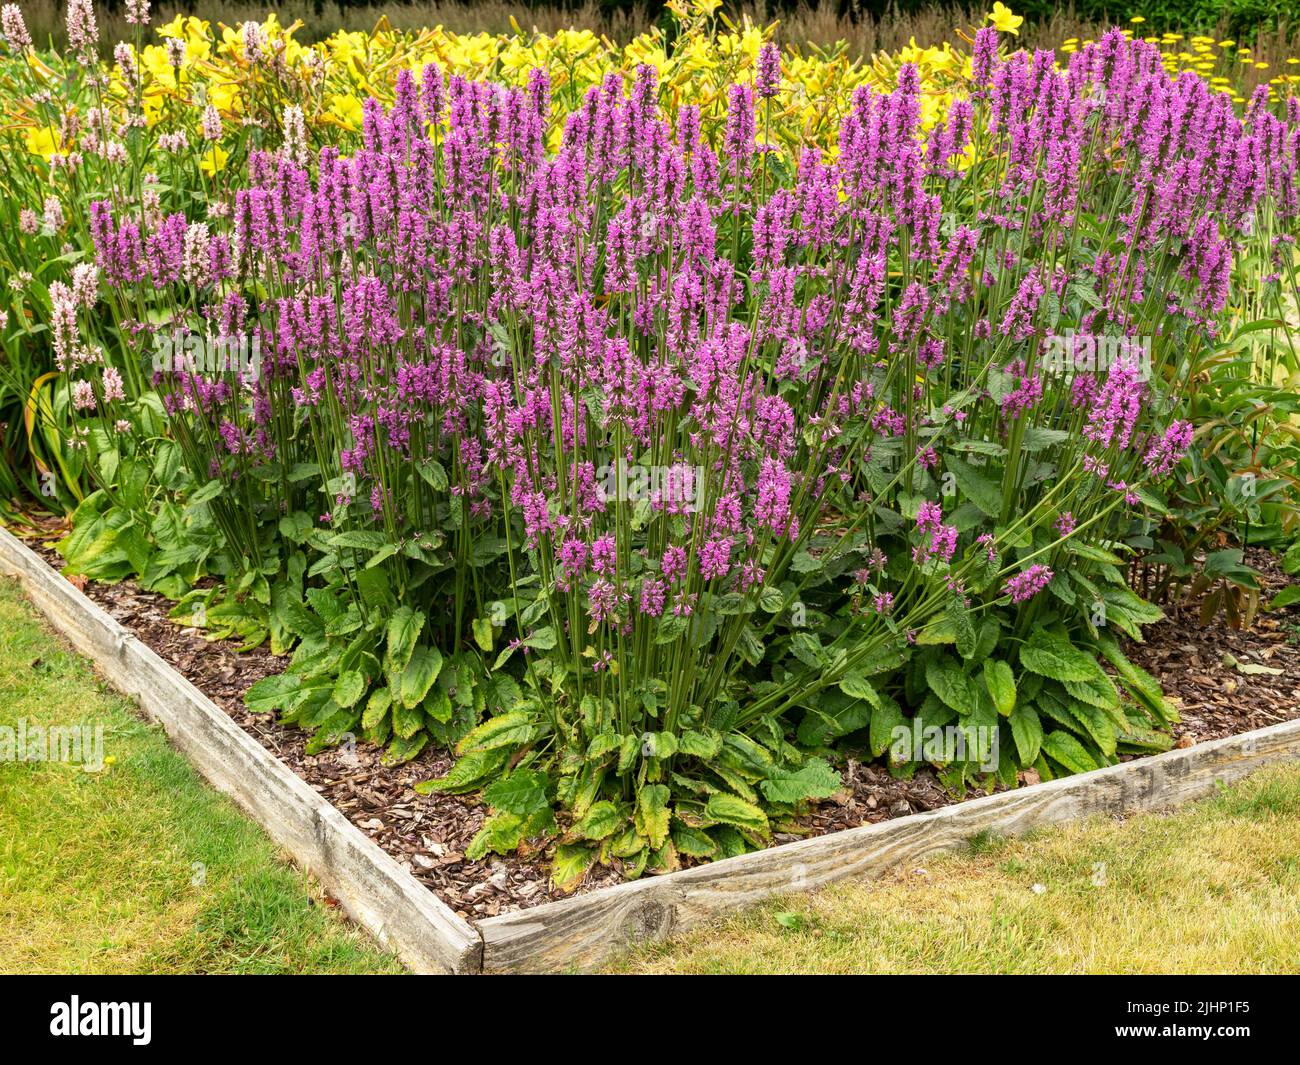 Purple Betony flowering in a flower bed in a garden Stock Photo